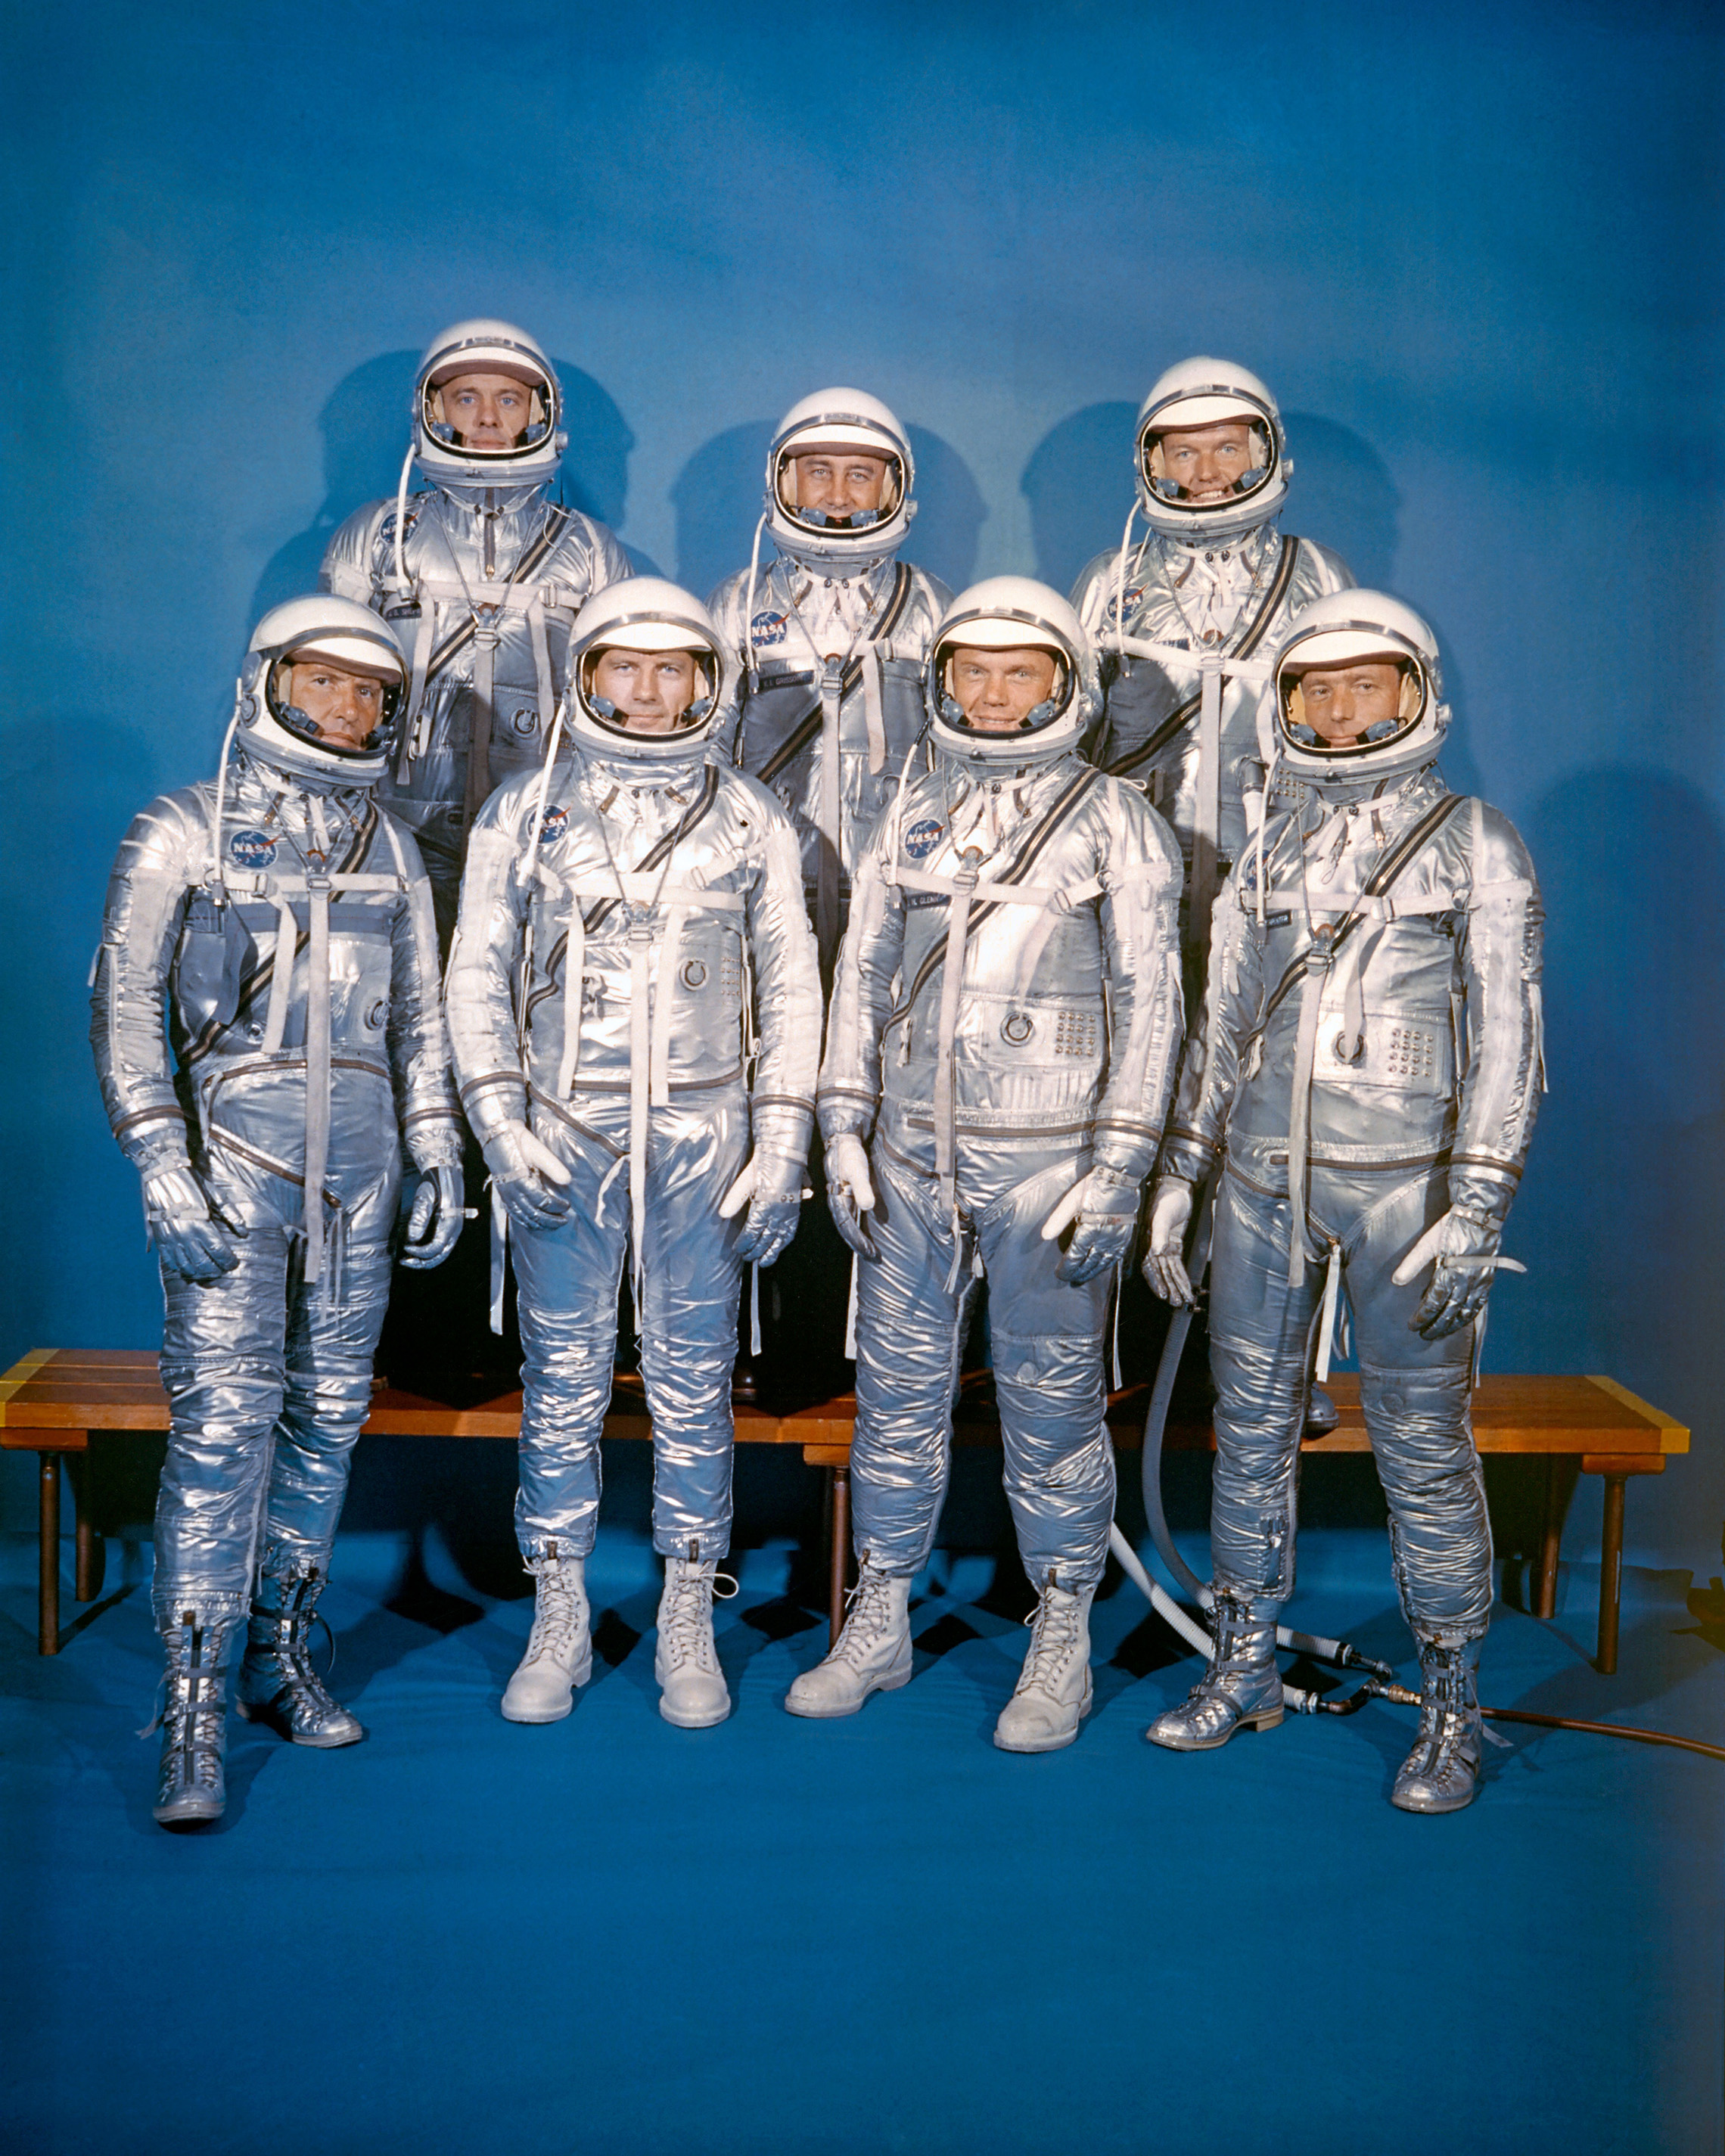 em 9 de abril de 1959, a NASA introduziu a sua primeira classe de astronautas, o Mercury 7. A linha de frente, da esquerda para a direita: Walter M. Schirra, Jr., Donald K. "Deke" Slayton, John H. Glenn, Jr. e M. Scott Carpenter; fileira de trás, Alan B. Shepard, Jr., Virgil I. "Gus" Grissom, e L. Gordon Cooper, Jr. (NASA)"Deke" Slayton, John H. Glenn, Jr., and M. Scott Carpenter; back row, Alan B. Shepard, Jr., Virgil I. "Gus" Grissom, and L. Gordon Cooper, Jr. (NASA)